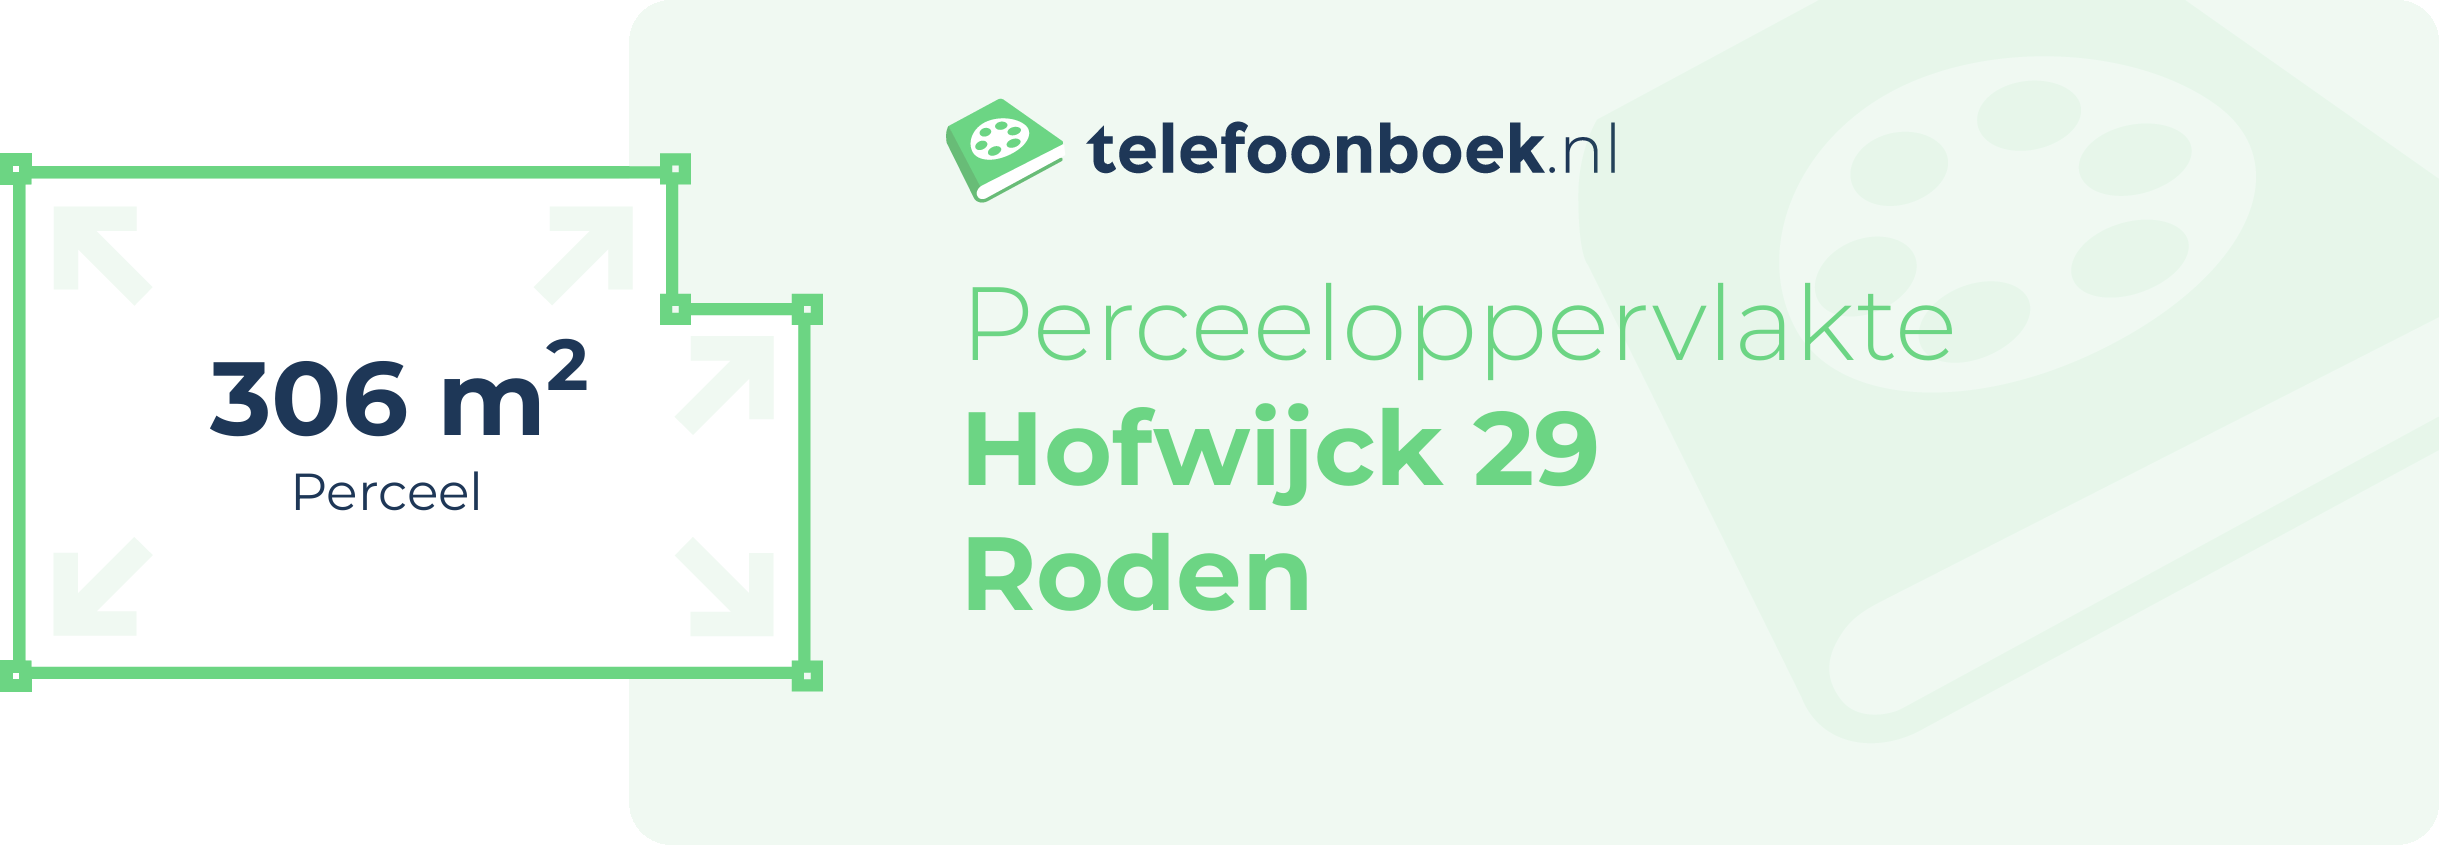 Perceeloppervlakte Hofwijck 29 Roden